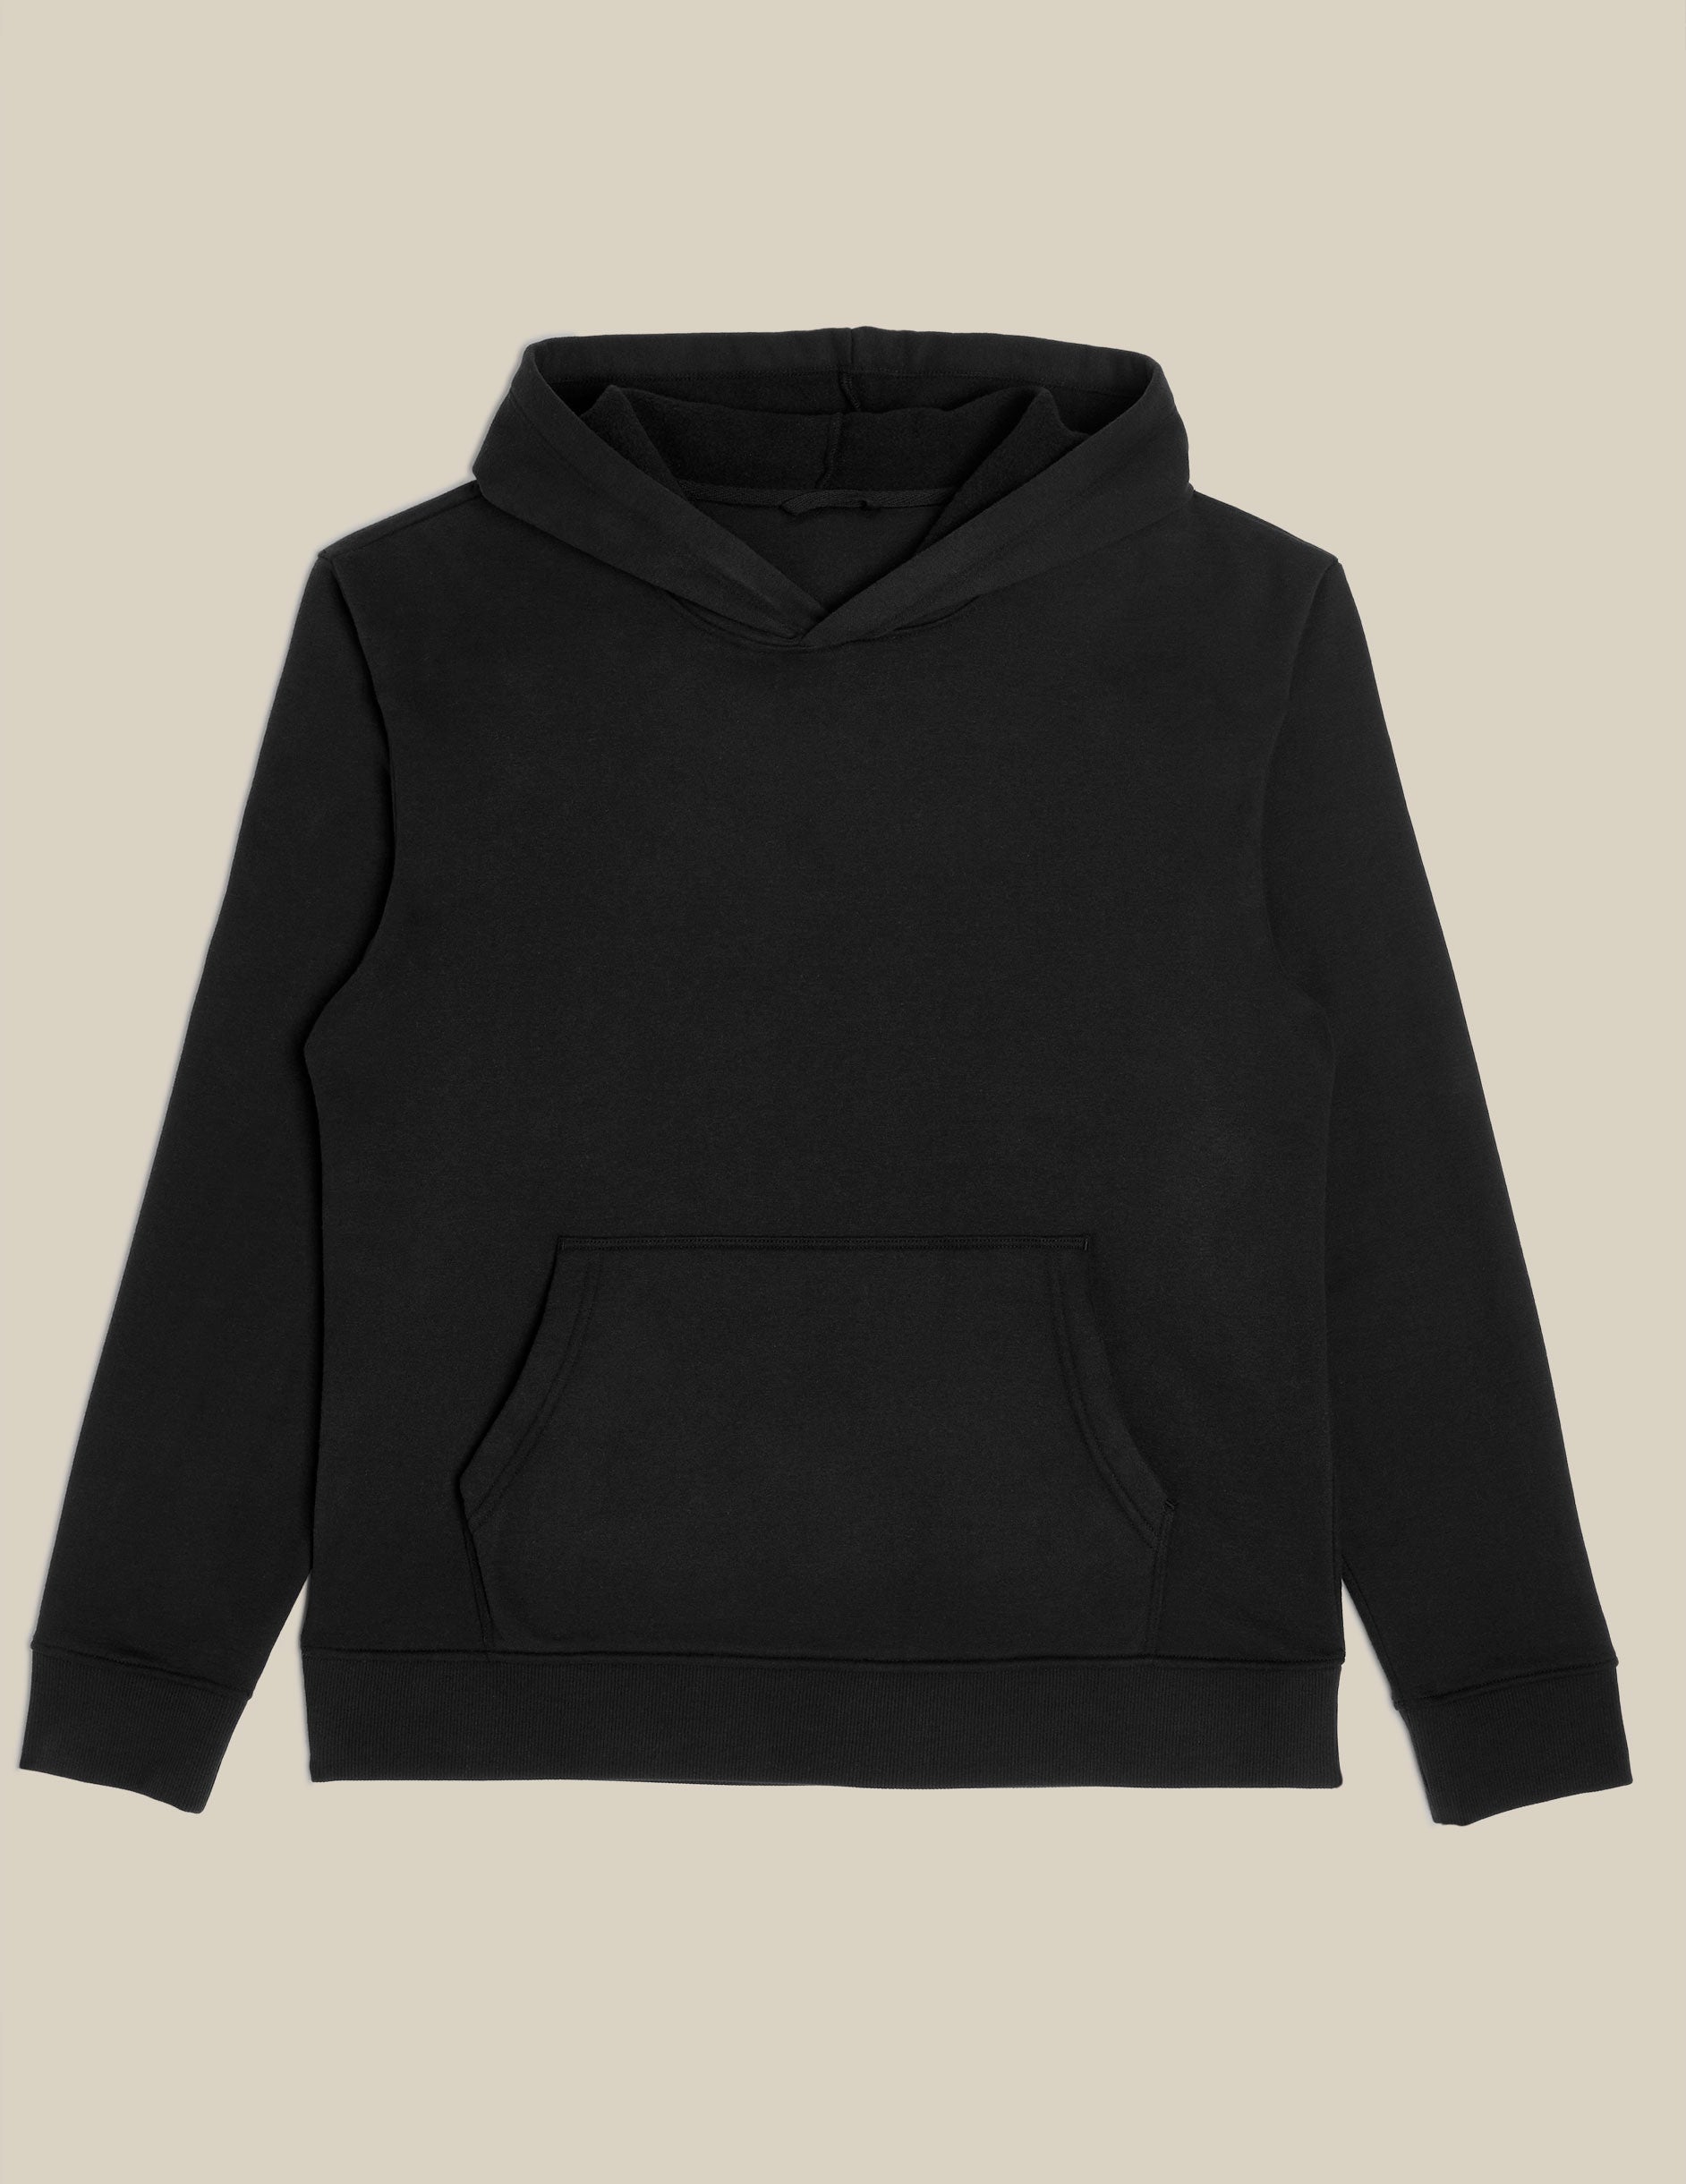 black unisex hoodie.